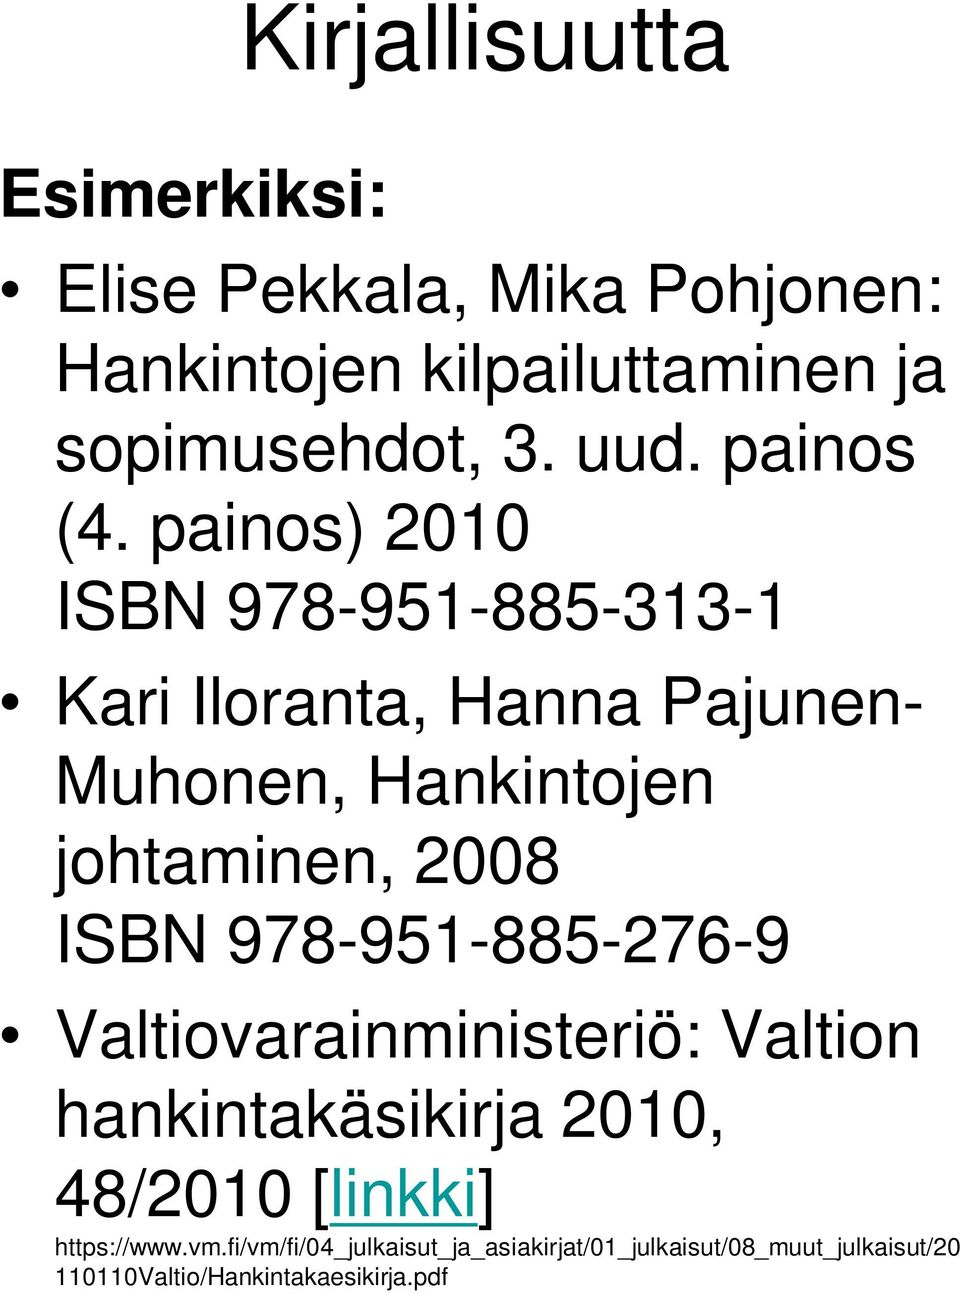 painos) 2010 ISBN 978-951-885-313-1 Kari Iloranta, Hanna Pajunen- Muhonen, Hankintojen johtaminen, 2008 ISBN